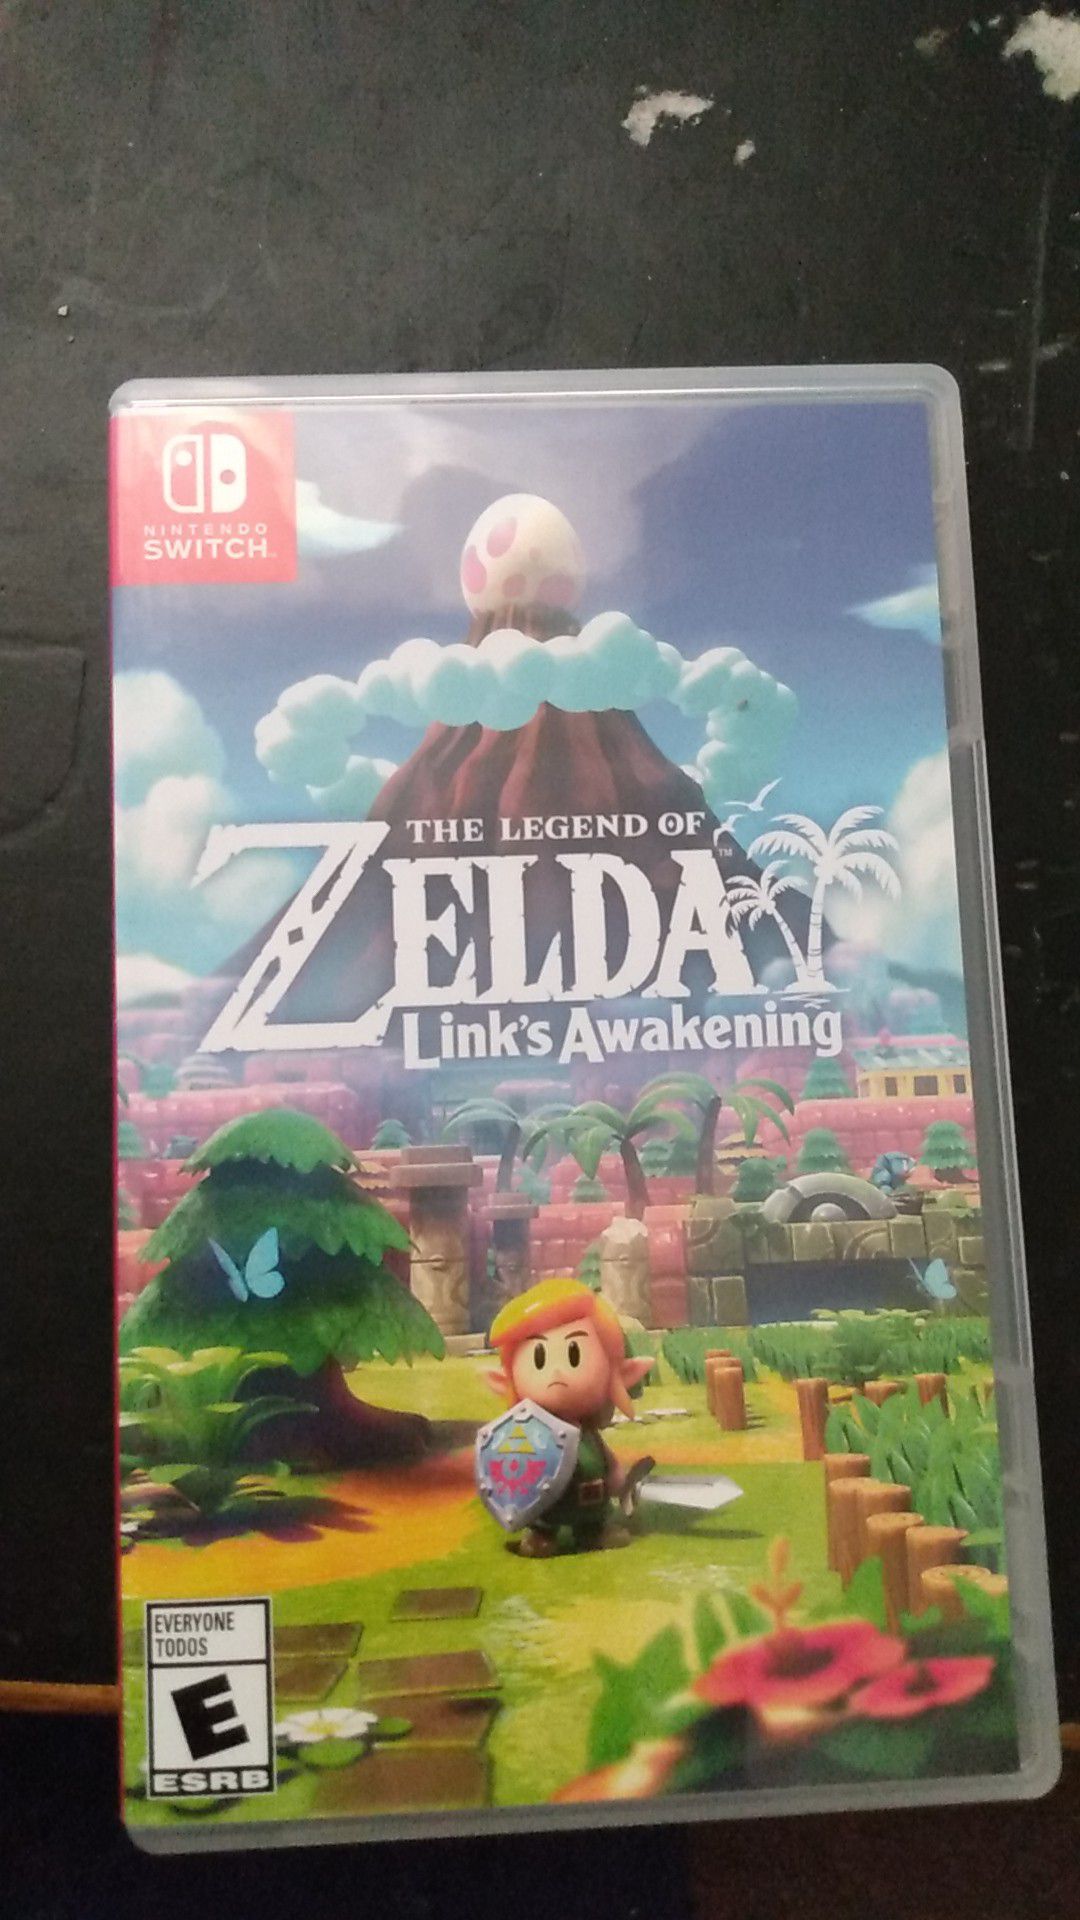 The legend of Zelda Links Awakening